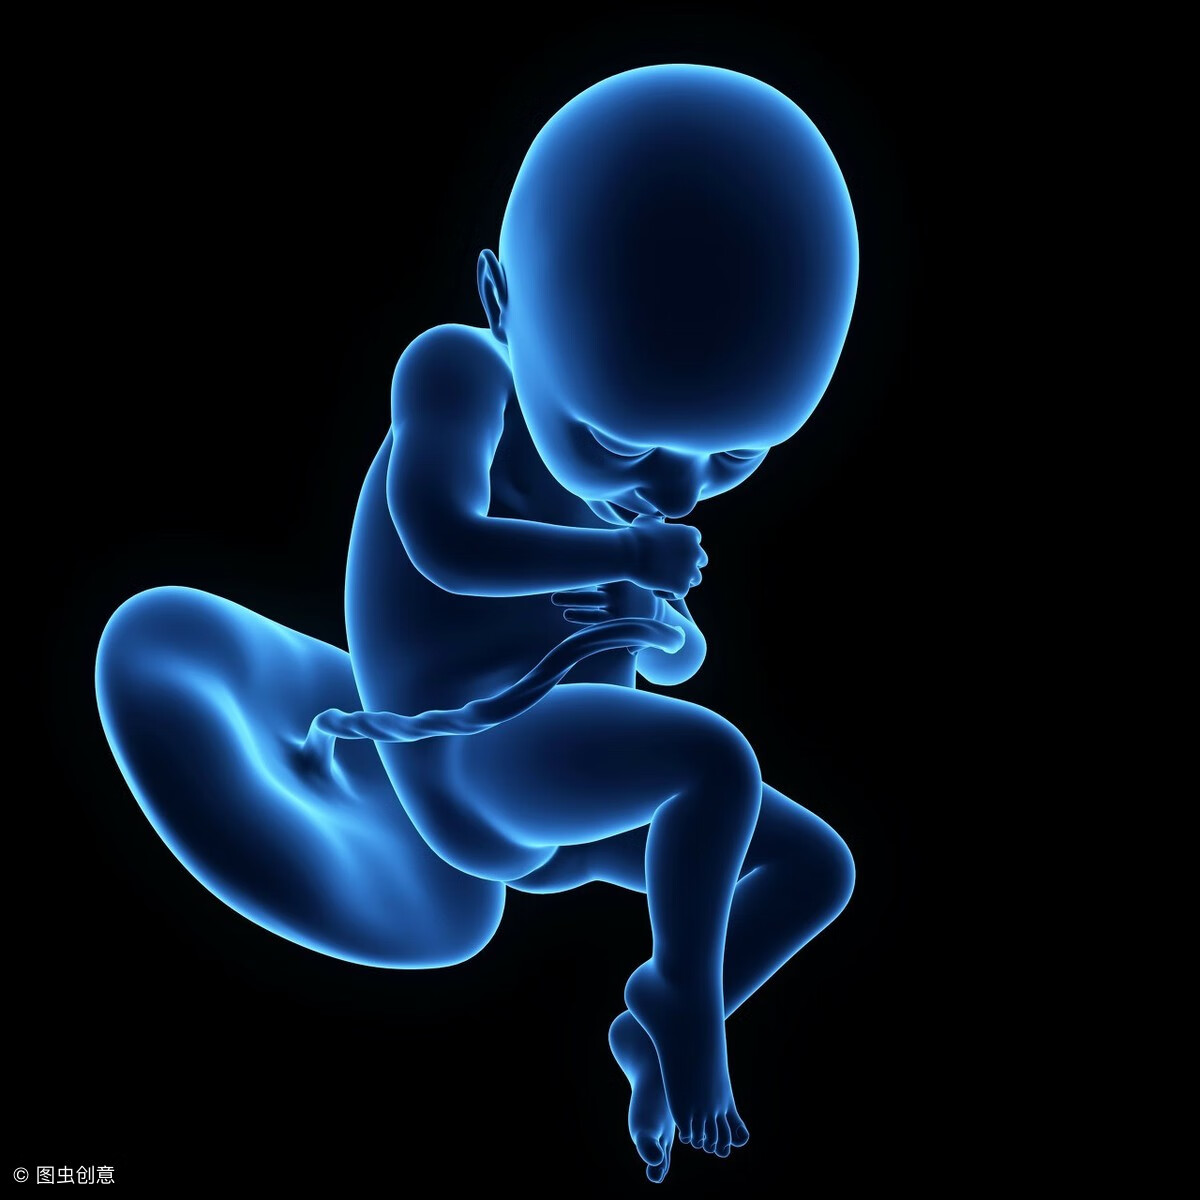 怀孕第32周胎儿大小(32周胎儿大小正常范围)